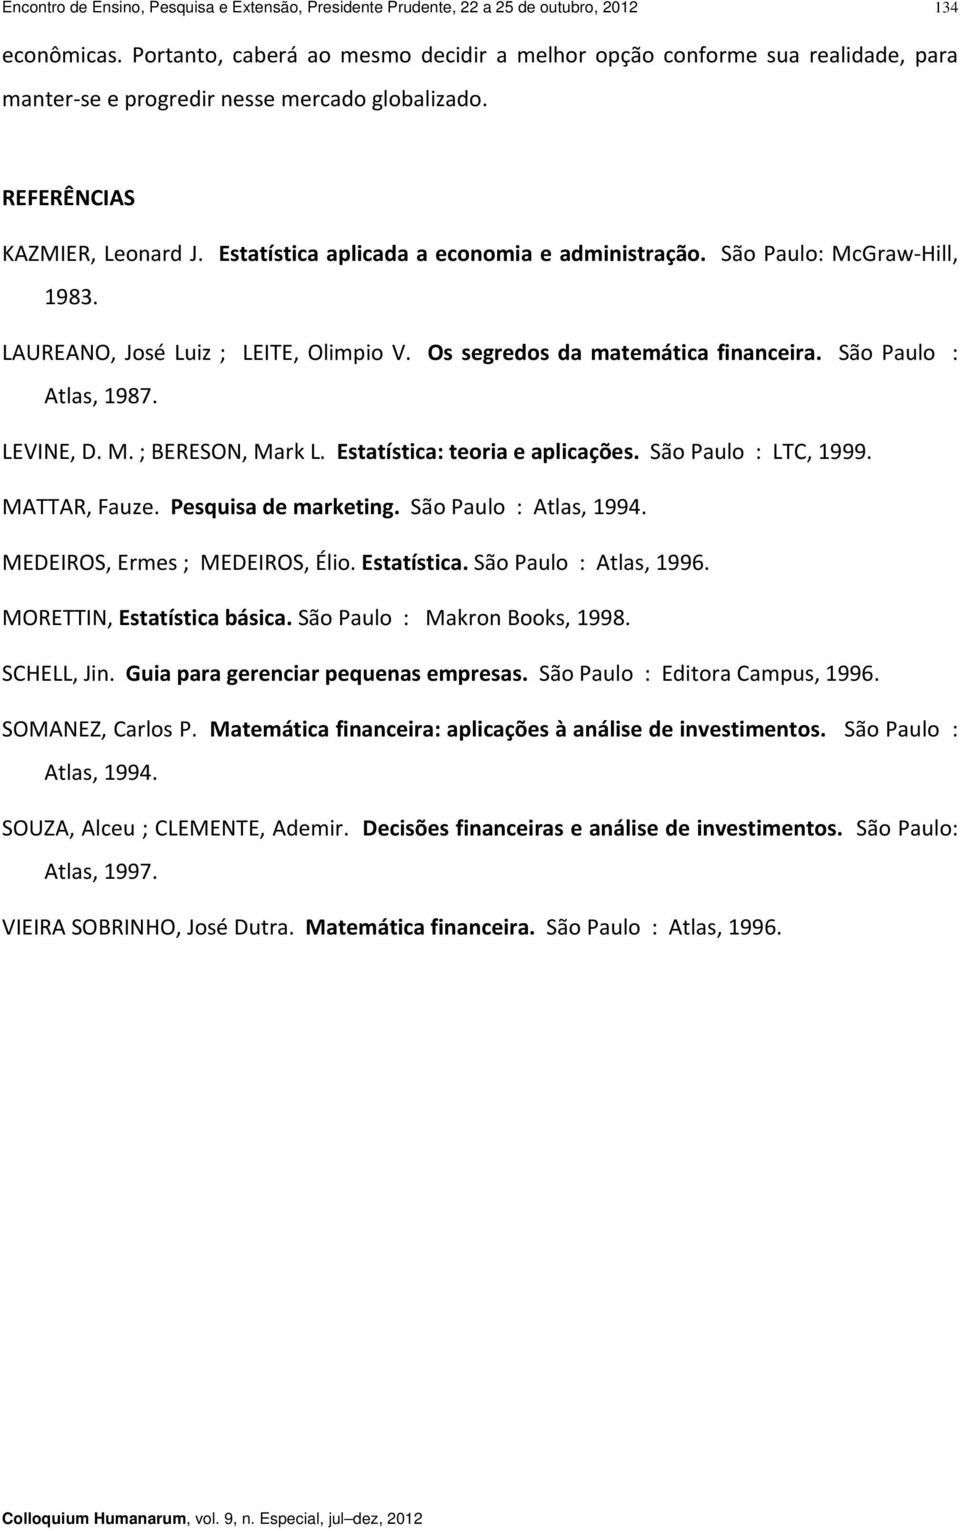 Estatística aplicada a economia e administração. São Paulo: McGraw Hill, 1983. LAUREANO, José Luiz ; LEITE, Olimpio V. Os segredos da matemática financeira. São Paulo : Atlas, 1987. LEVINE, D. M. ; BERESON, Mark L.